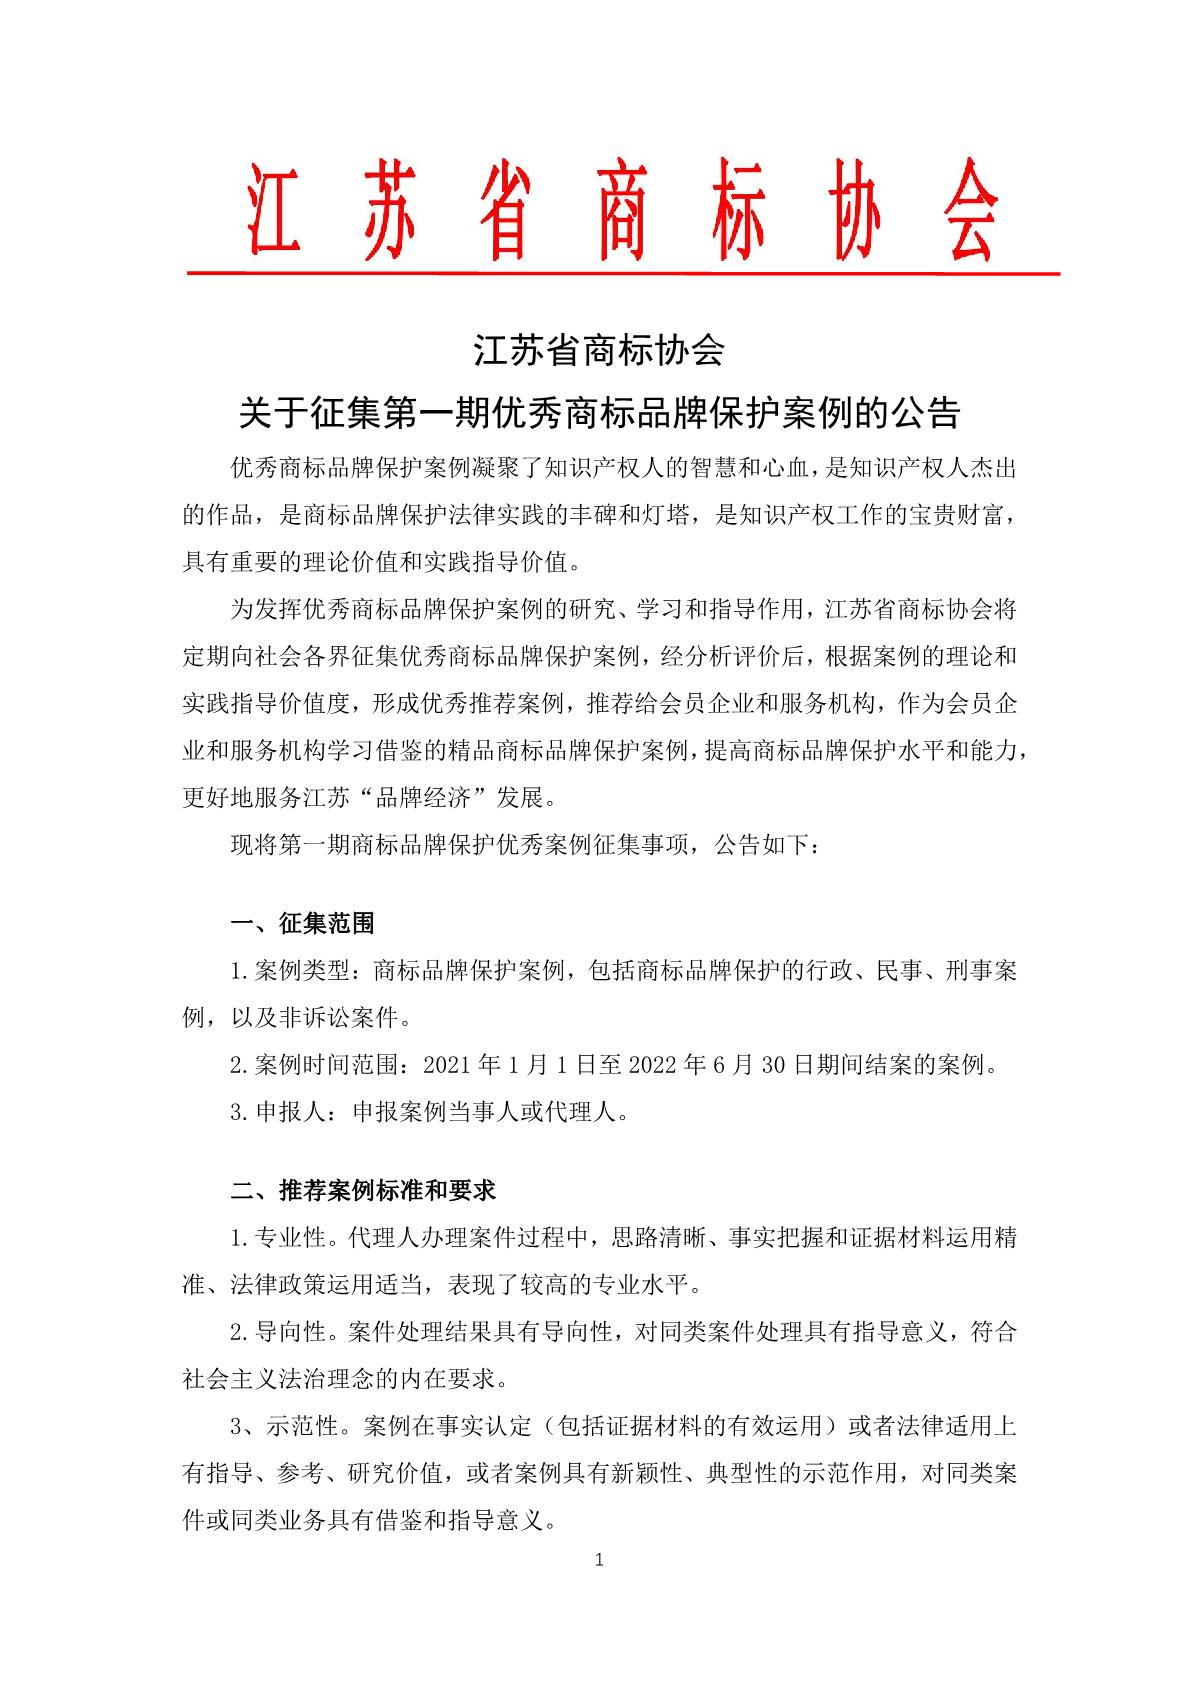 江苏省商标协会关于征集优秀商标品牌案例的公告（含附件）_1.JPG